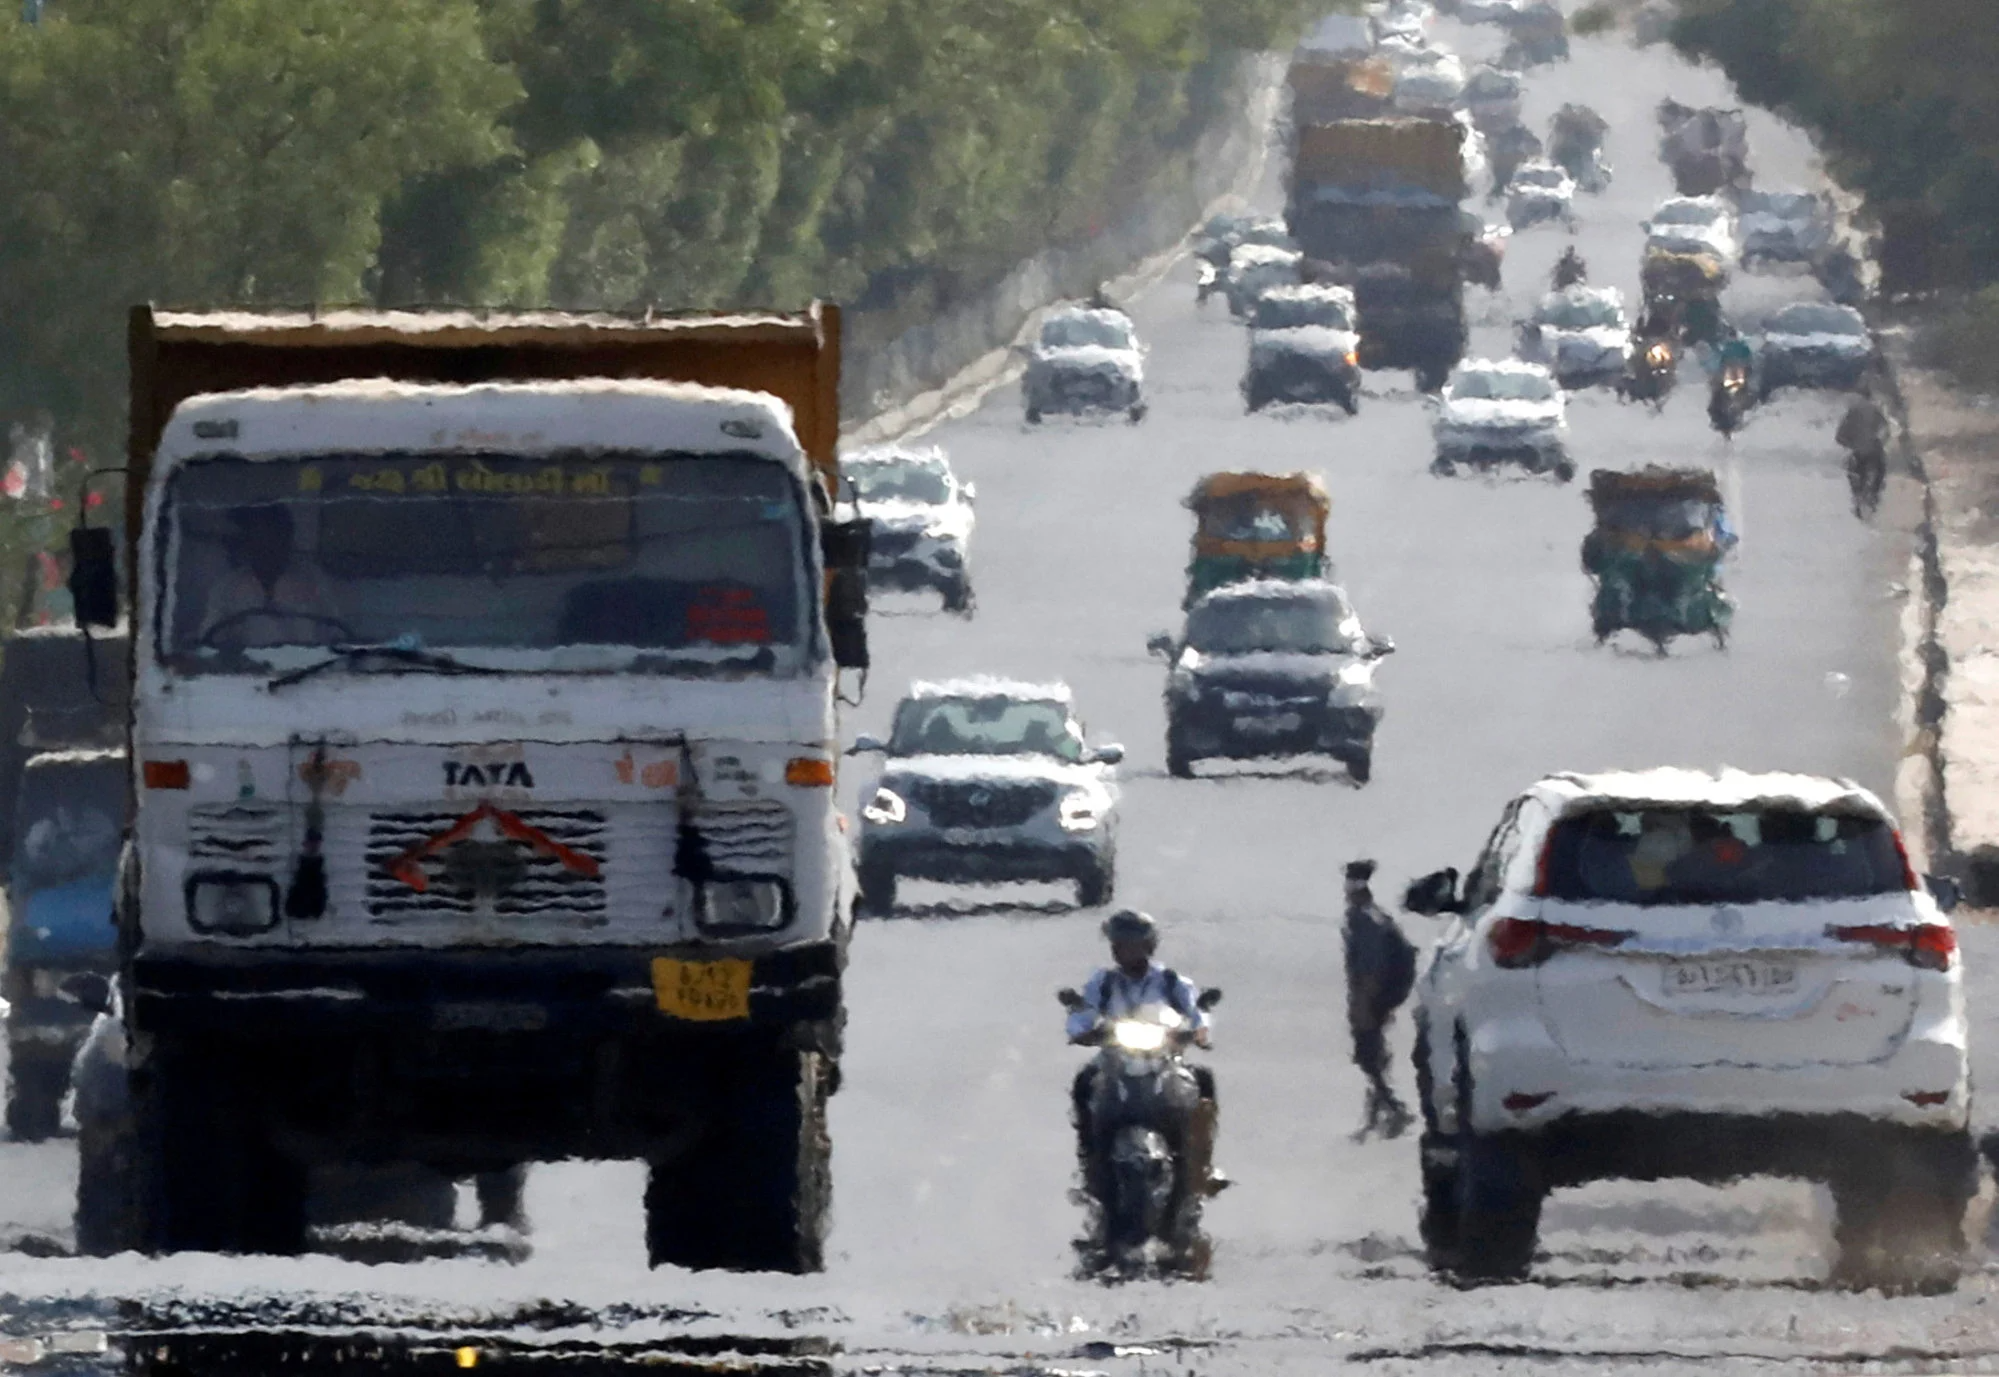 Châu Á chuẩn bị cho thời tiết khắc nghiệt mới khi El Nino xuất hiện - Ảnh 4.